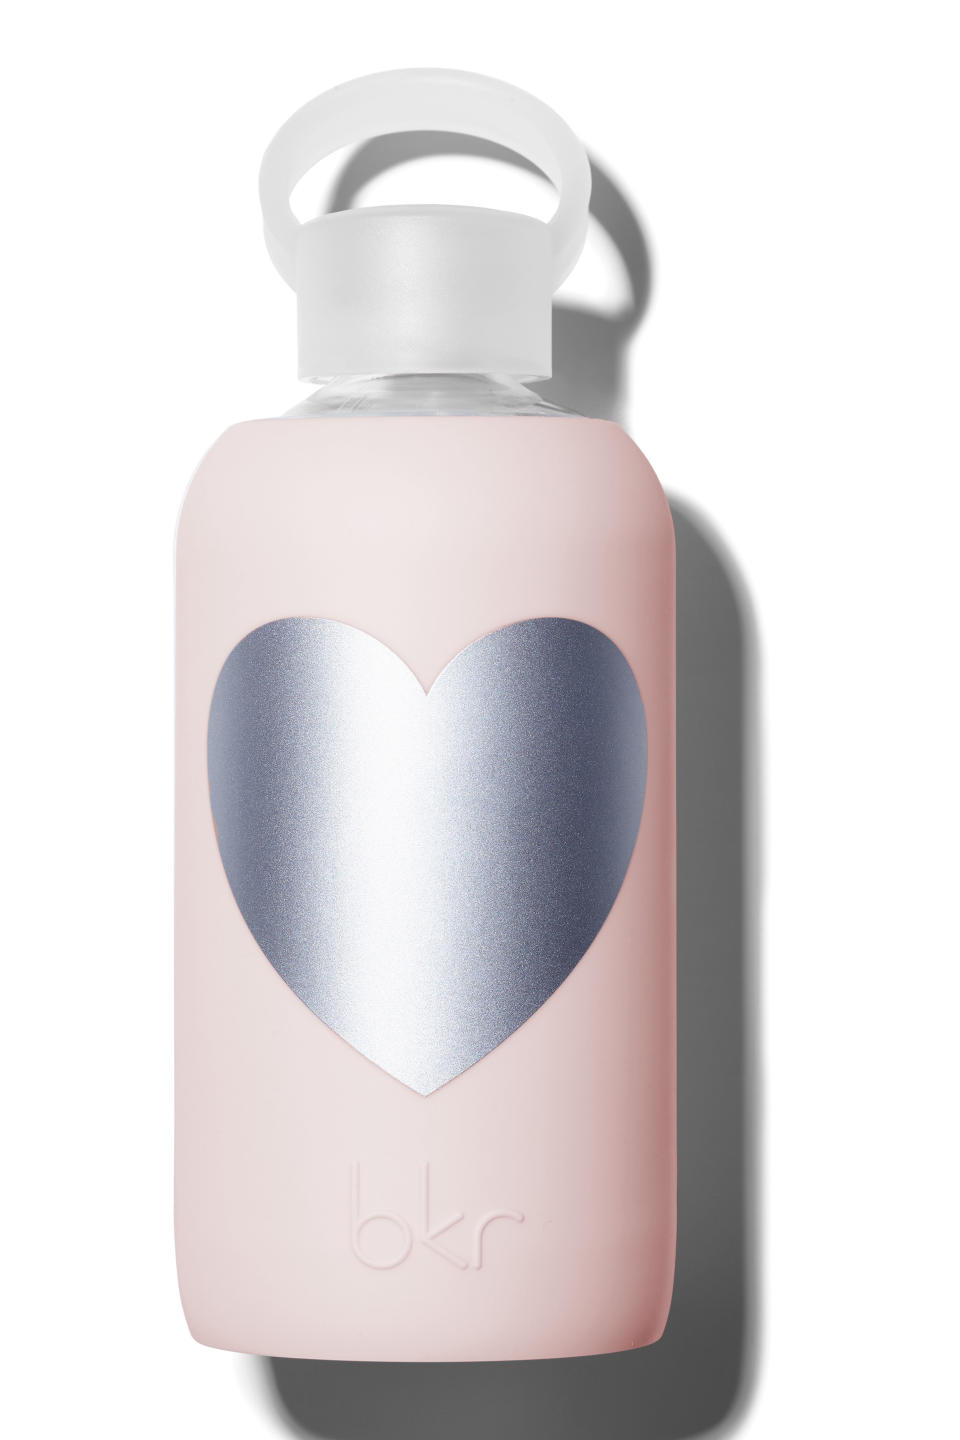 bkr Water Bottle in Silver Tutu Heart